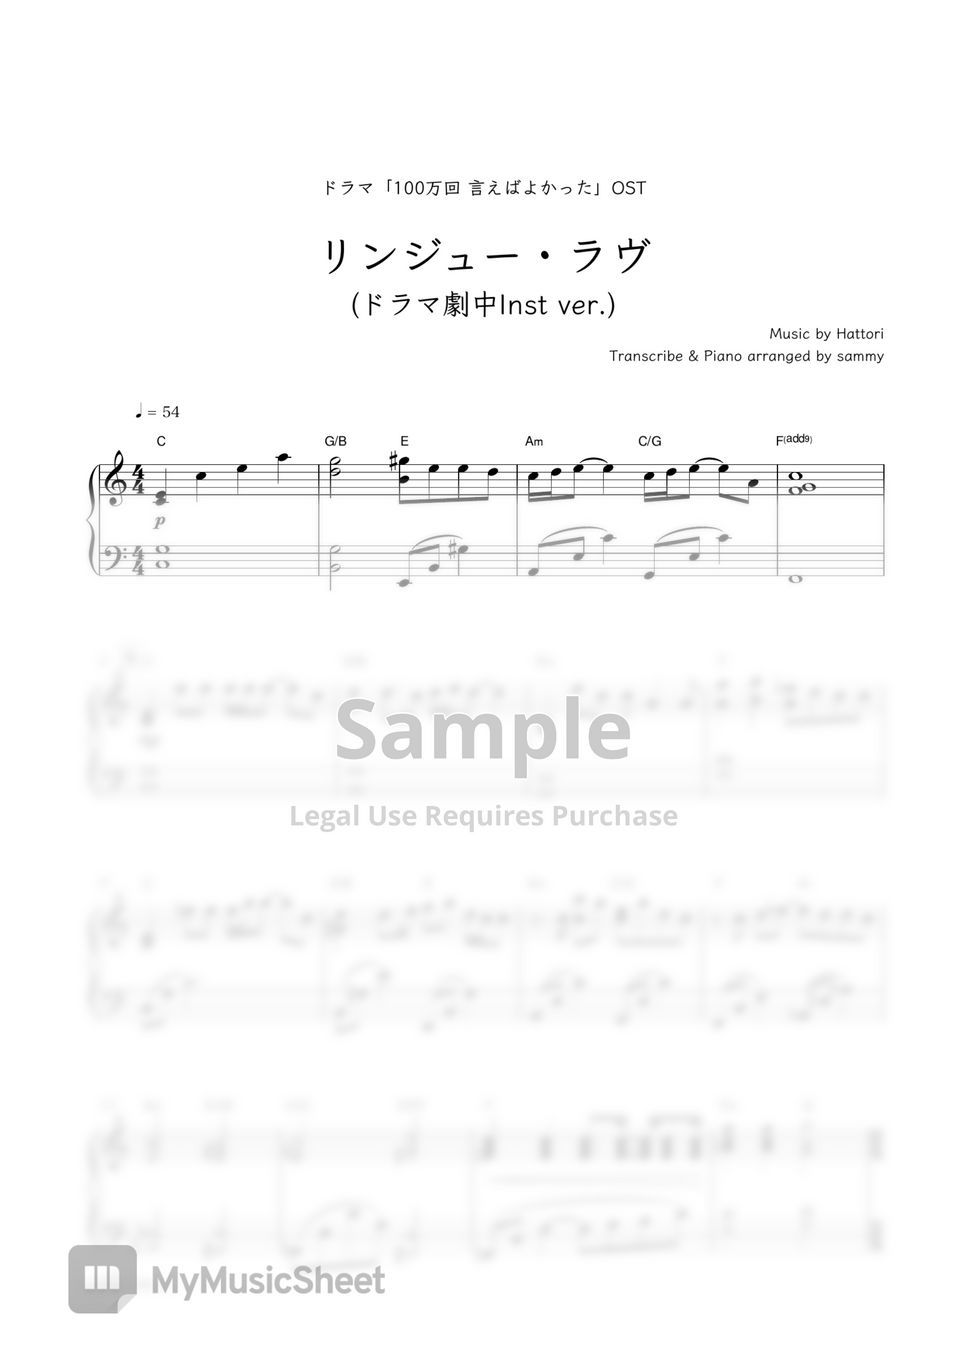 マカロニえんぴつ / ドラマ「100万回言えばよかった」 OST - Ringyu Love (Inst ver.) by sammy